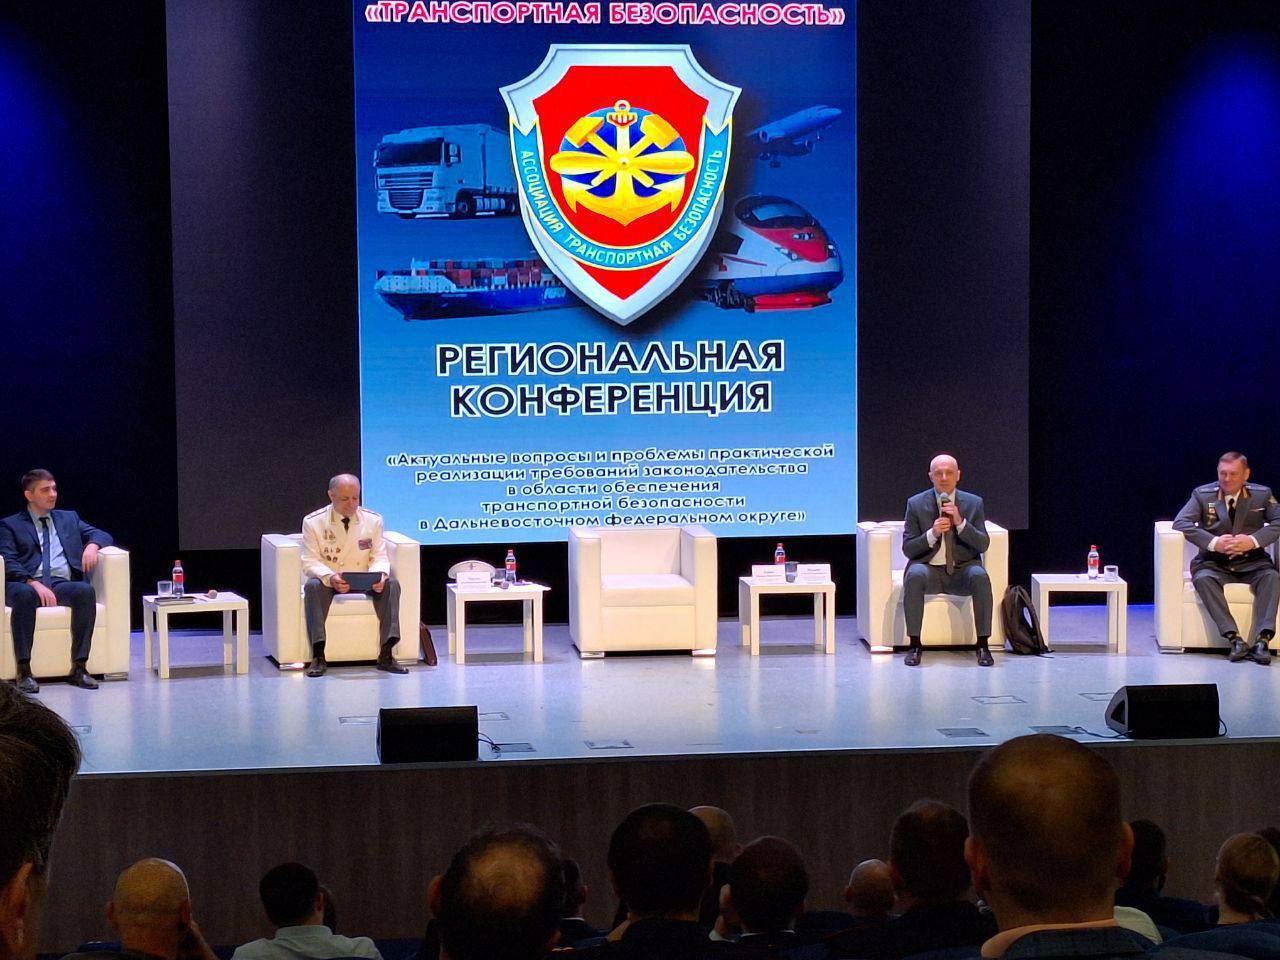 Руководство Ространснадзора приняло участие в региональной конференции по транспортной безопасности во Владивостоке